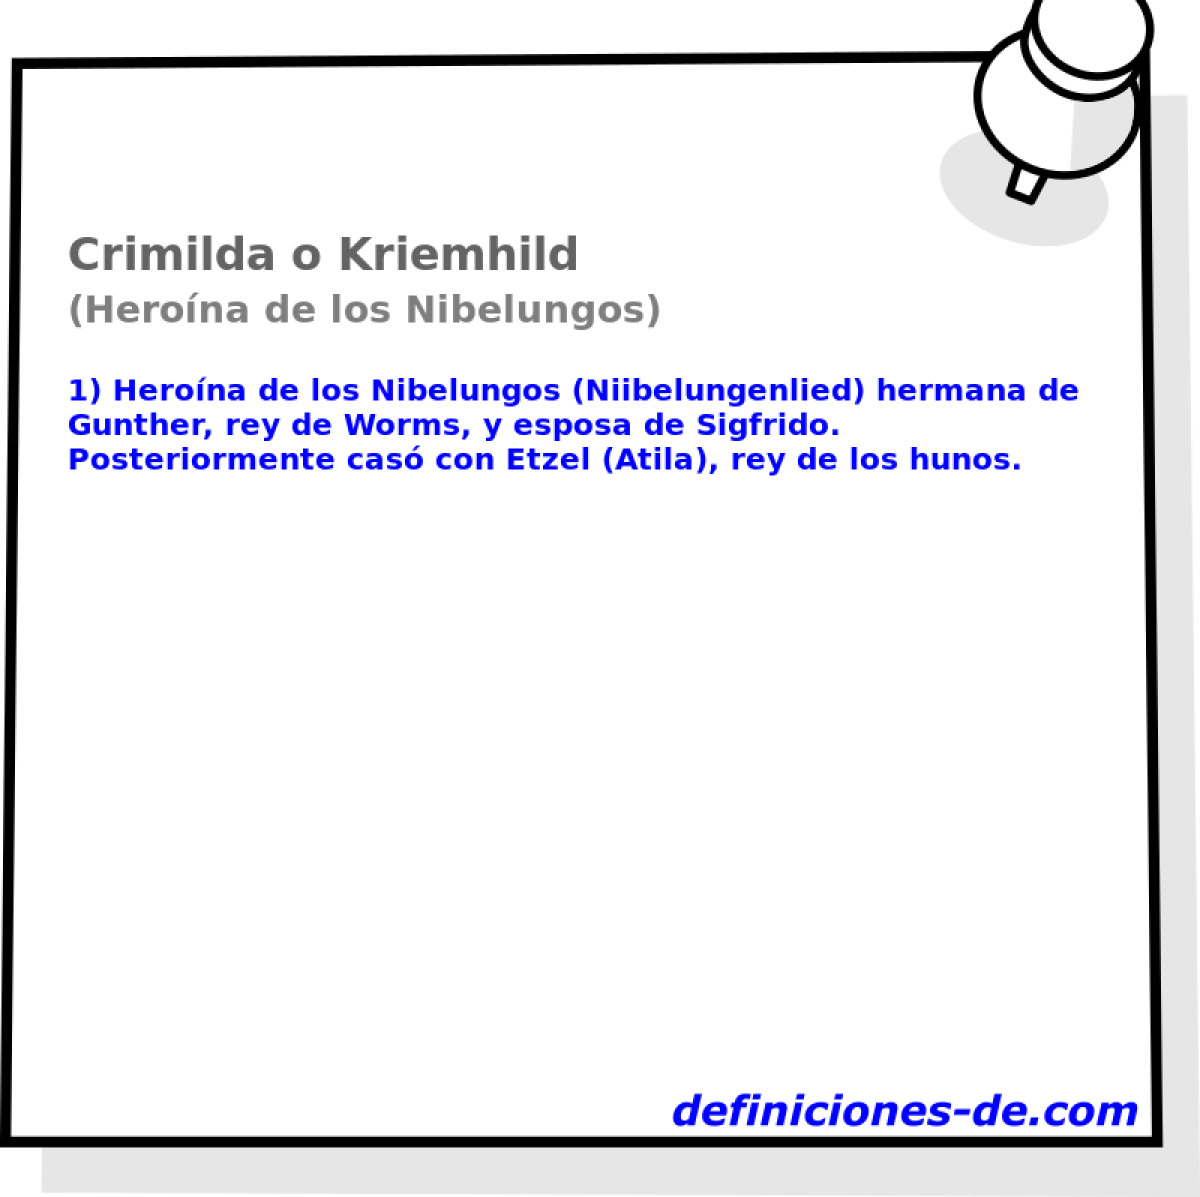 Crimilda o Kriemhild (Herona de los Nibelungos)